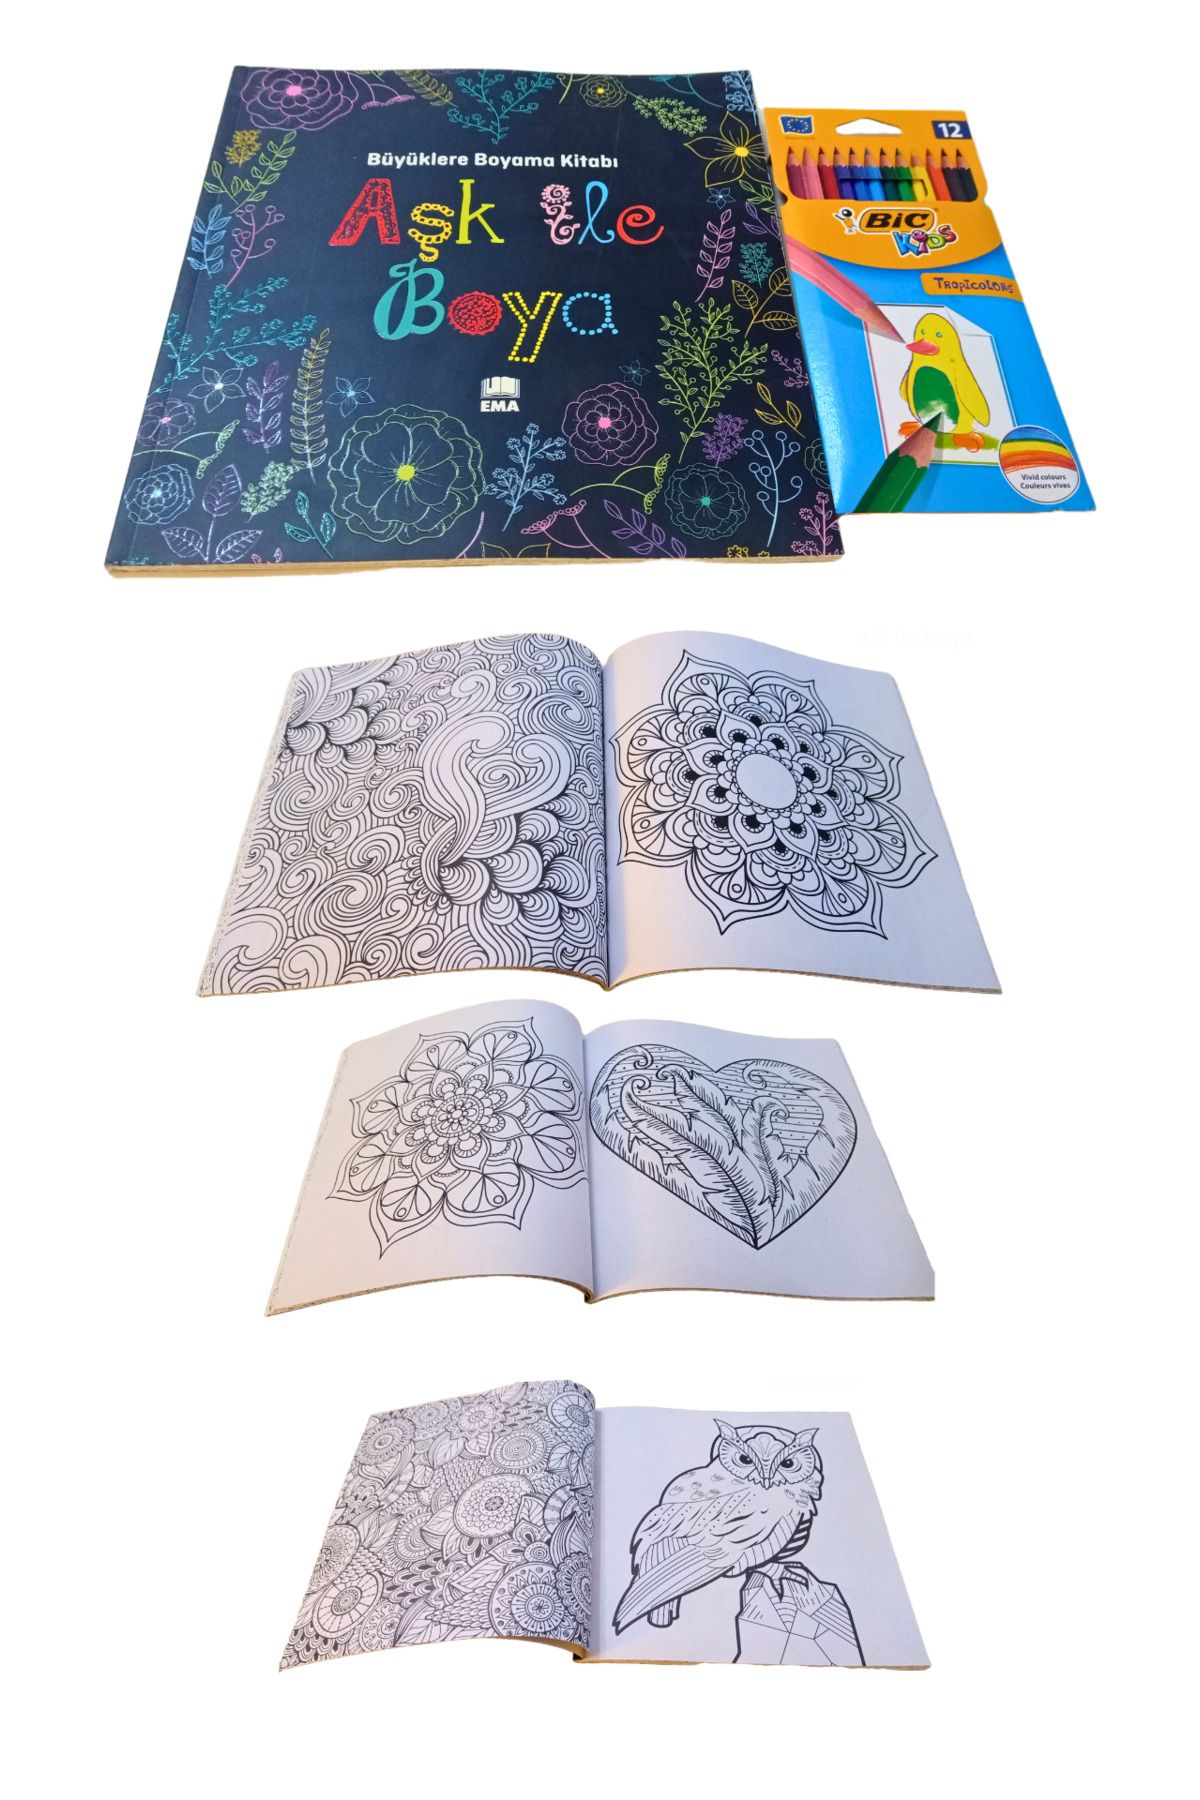 Bic Mandala Boyama Kitabı Yetişkinler için ve Bic Marka 12 Renk Kuru Boya Kalemi